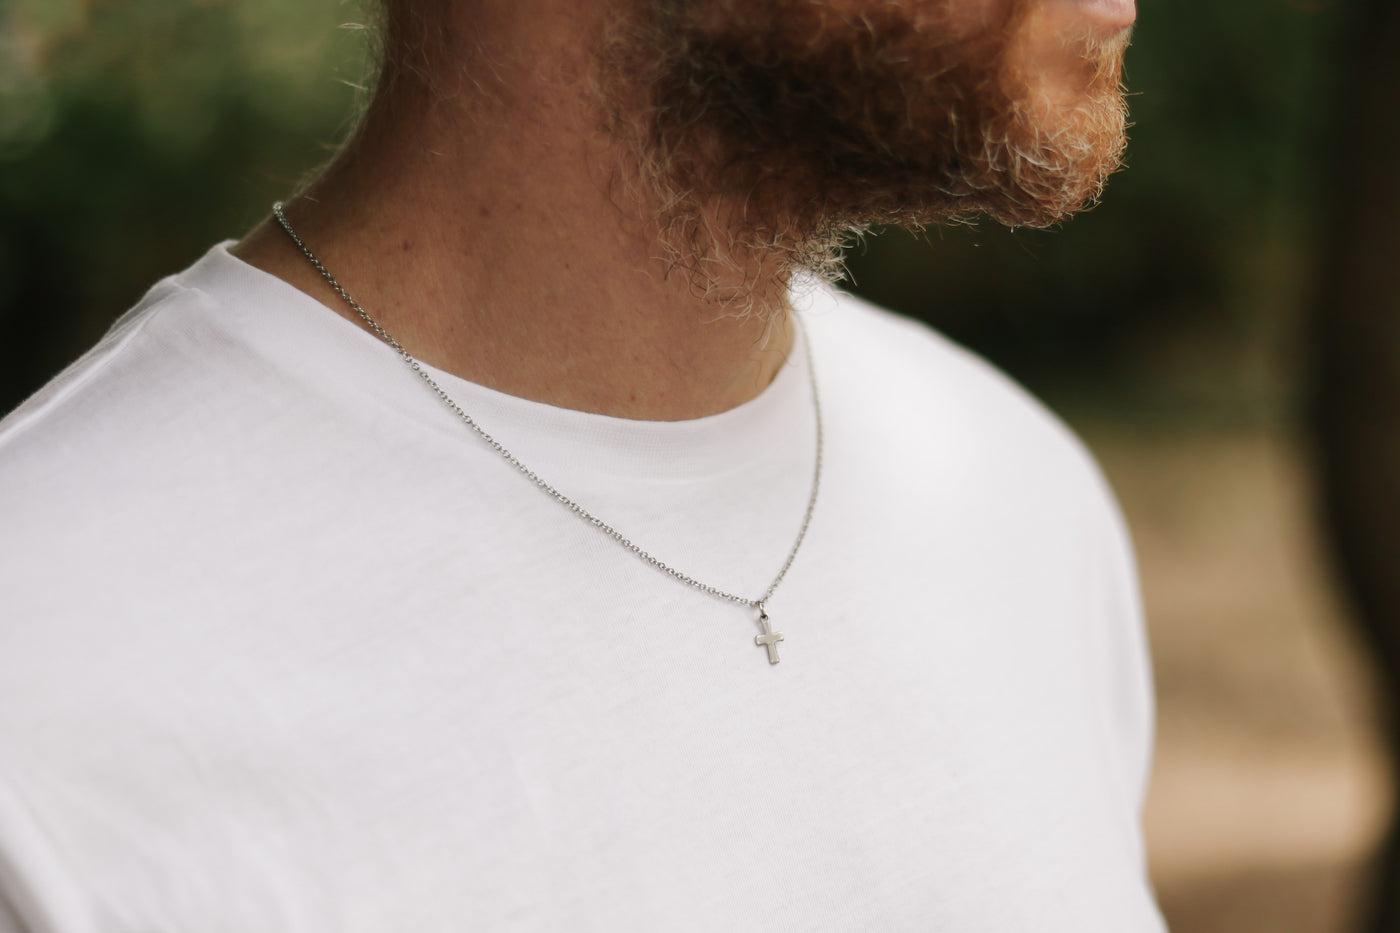 Waterproof Silver Cross Necklace for Men